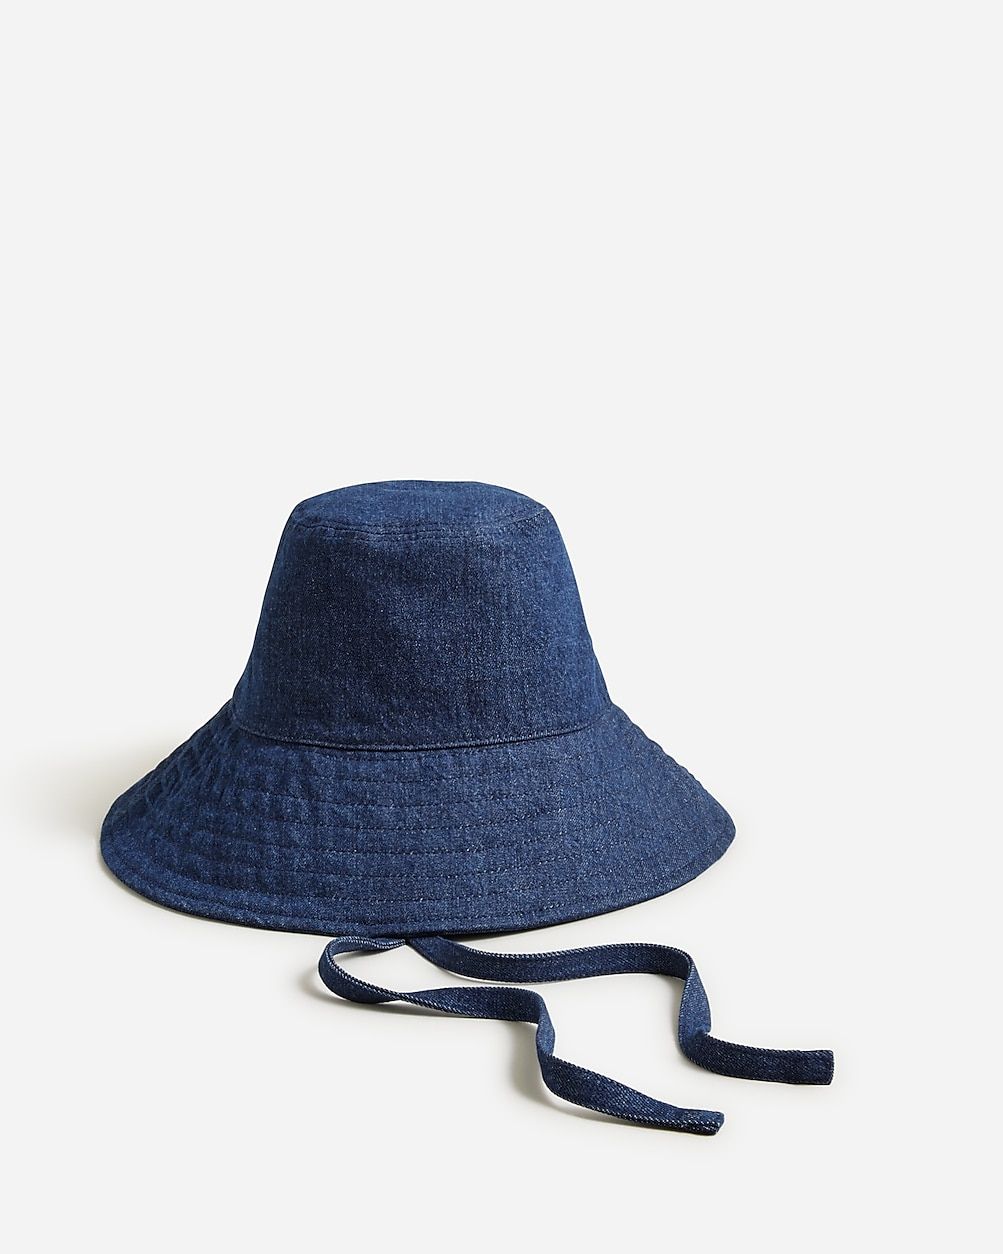 Denim bucket hat with ties | J.Crew US